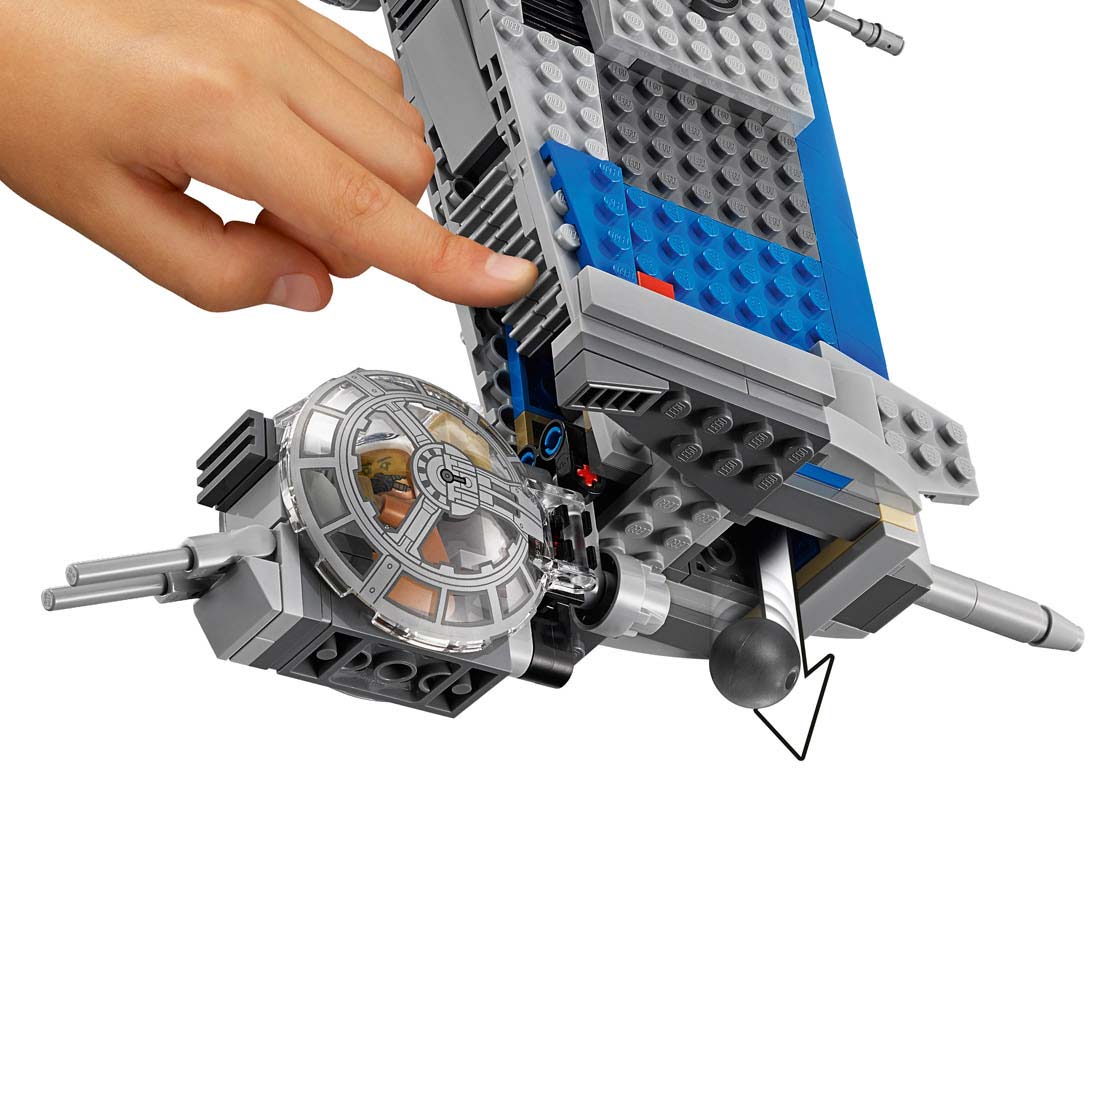 LEGO Star Wars 75188 Verzetsbommenwerper